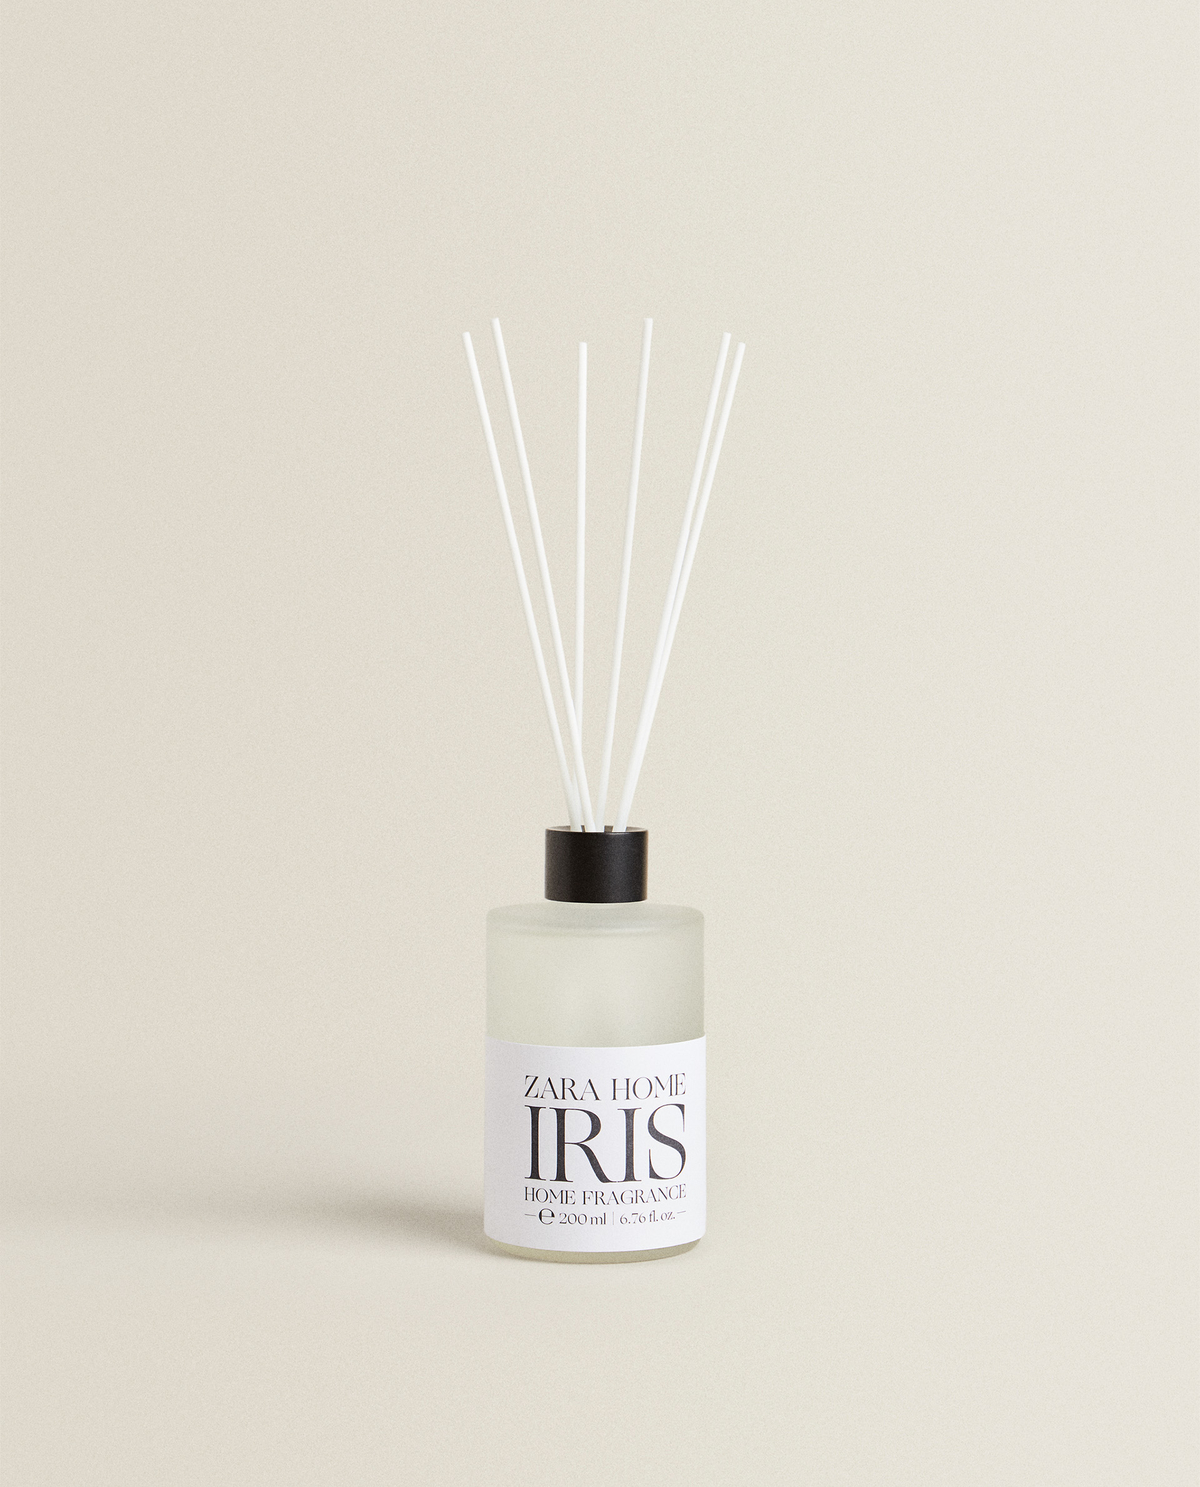 Iris reed